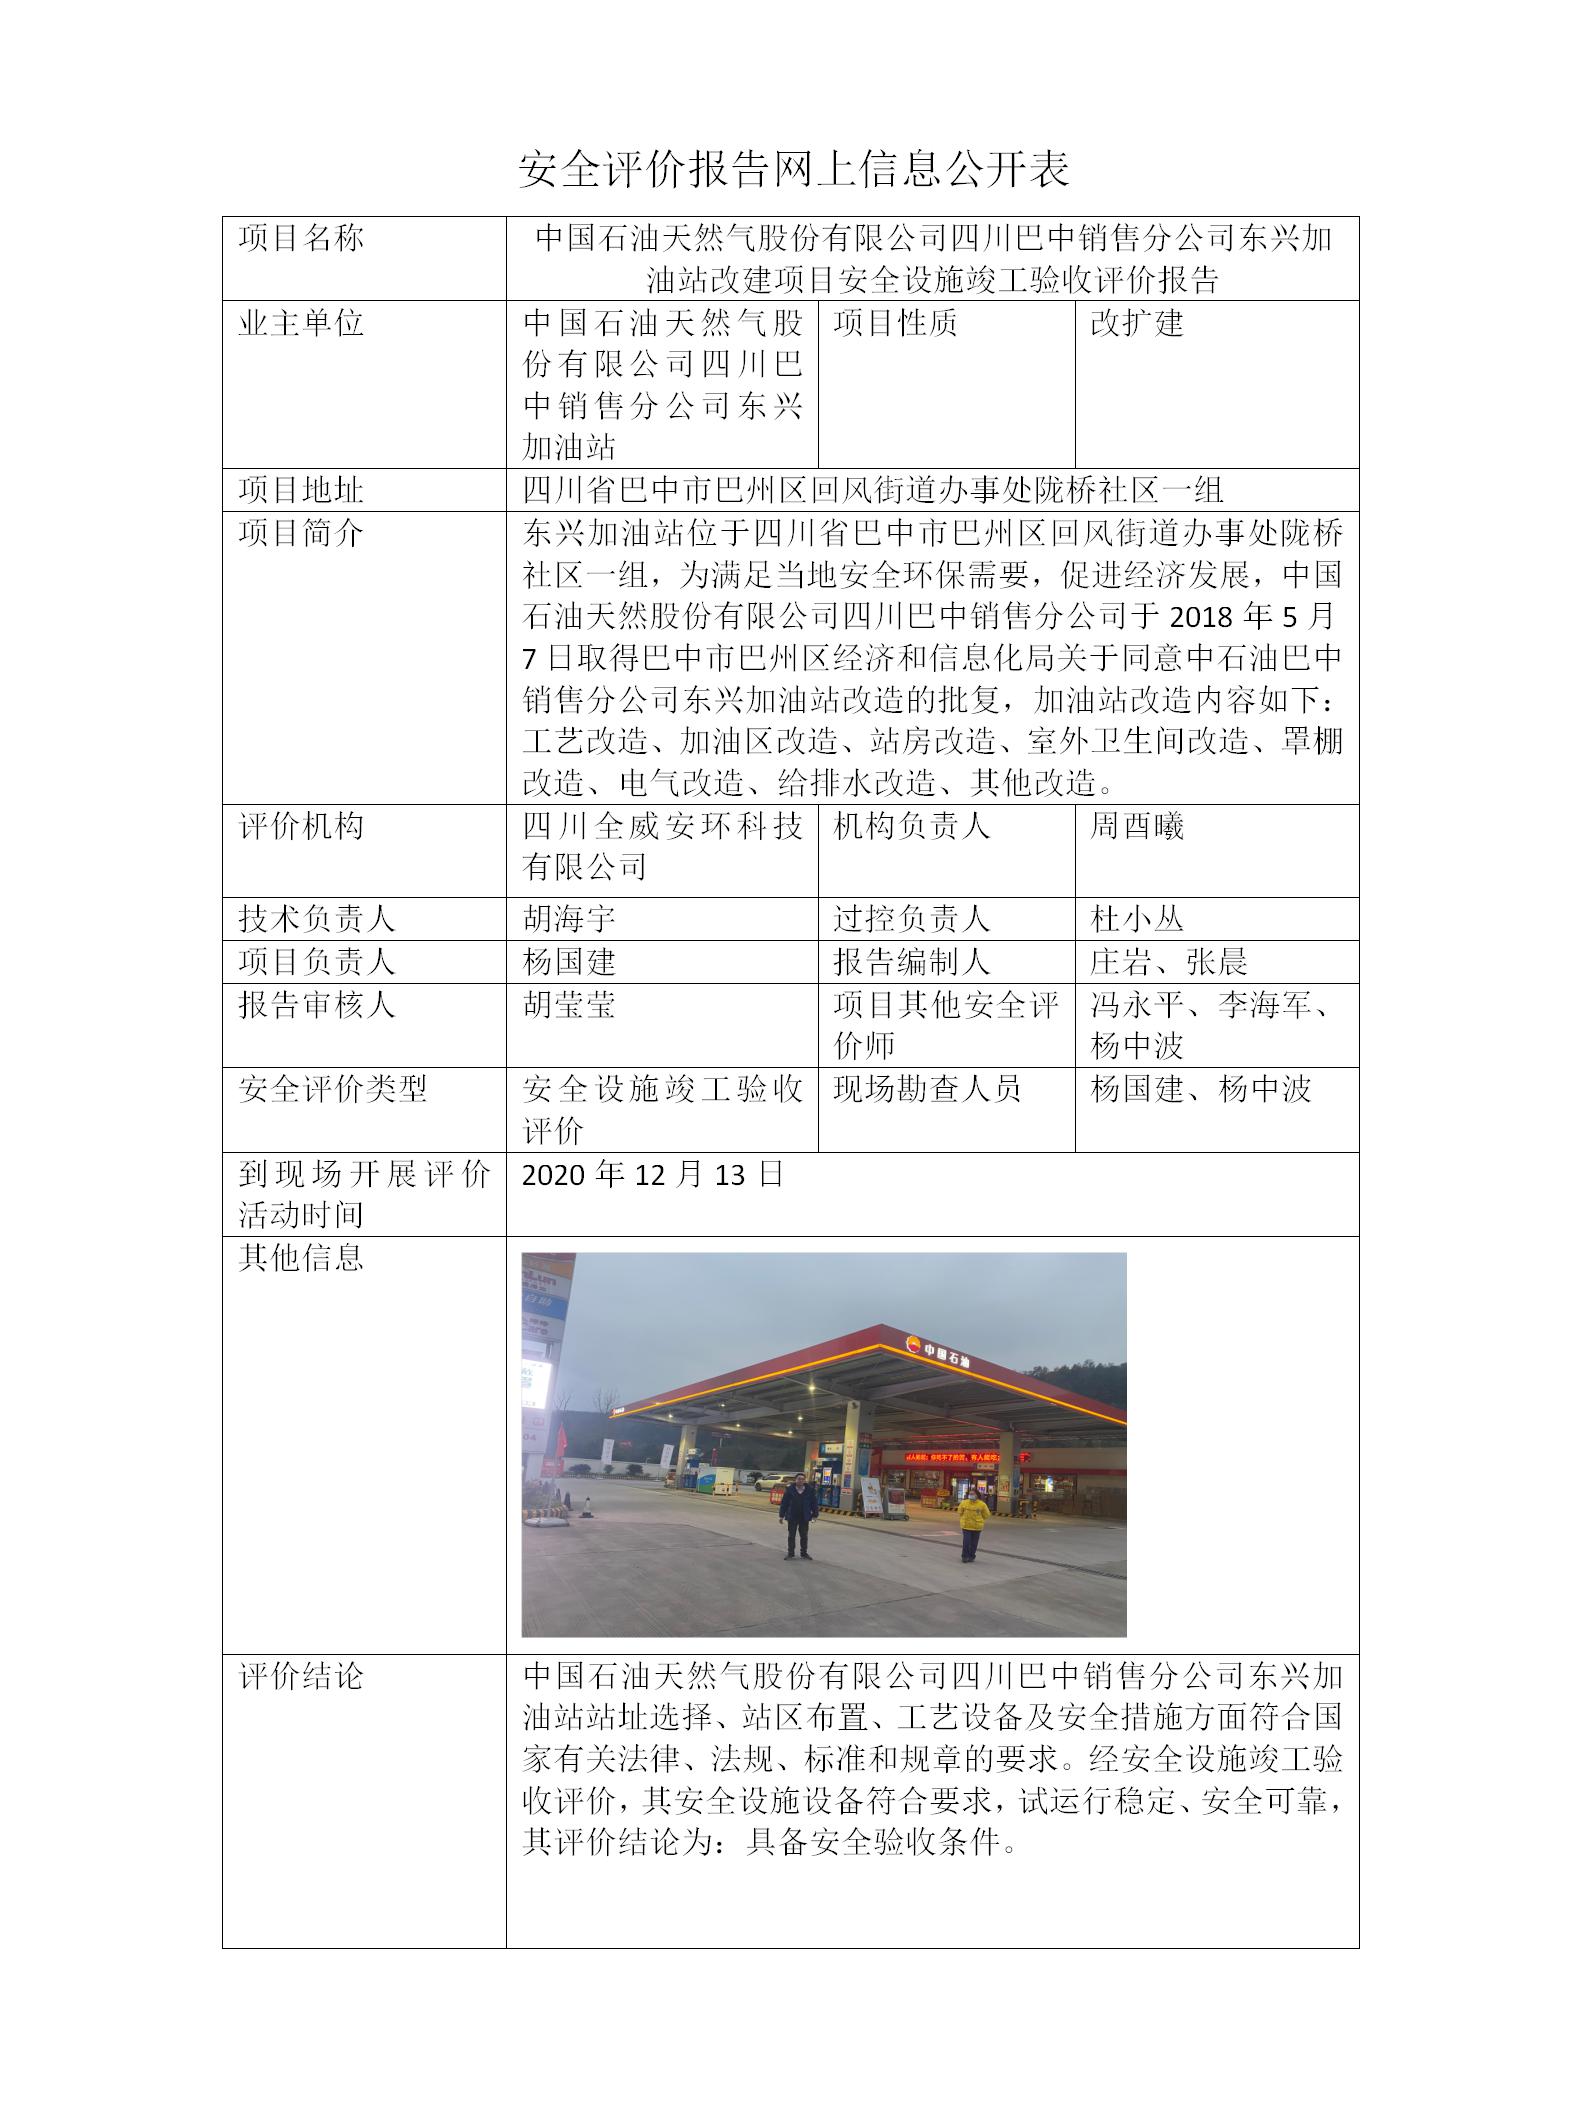 中国石油天然气股份有限公司四川巴中销售分公司东兴加油站改建项目安全设施竣工验收评价报告